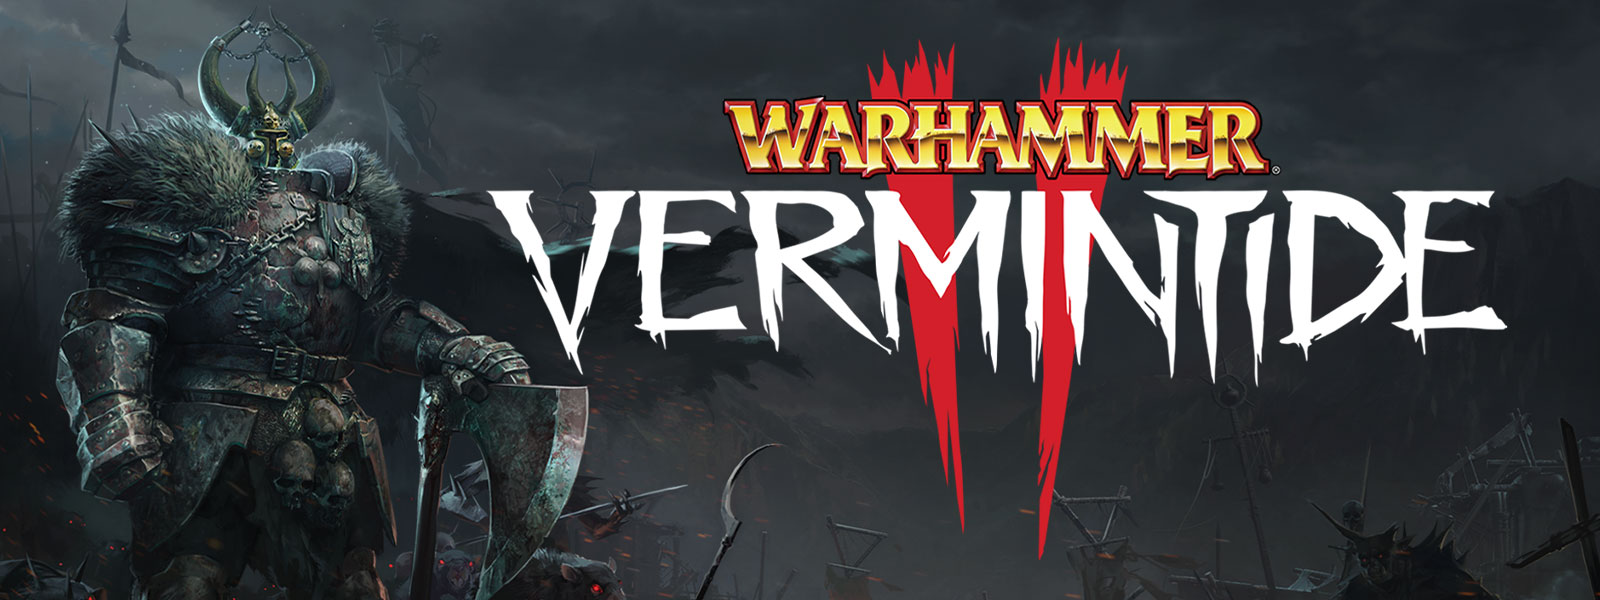 Warhammer: Vermintide 2, Fénylő szemű, páncélos figura prémes vállvédővel egy patkánysereg előőrsének élén áll.